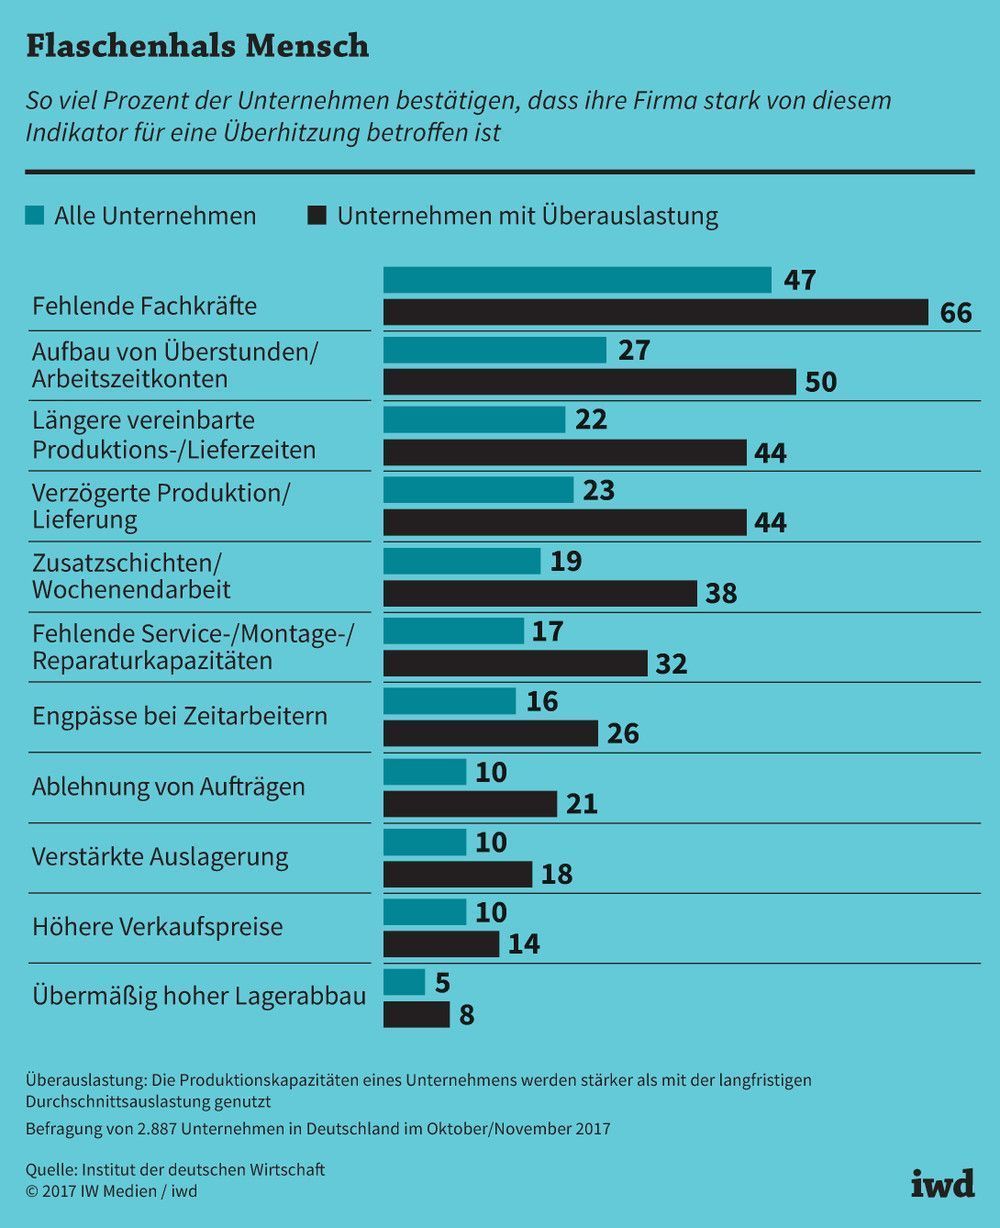 So viel Prozent der Unternehmen in Deutschland sind von diesen Indikatoren für Überhitzung stark betroffen